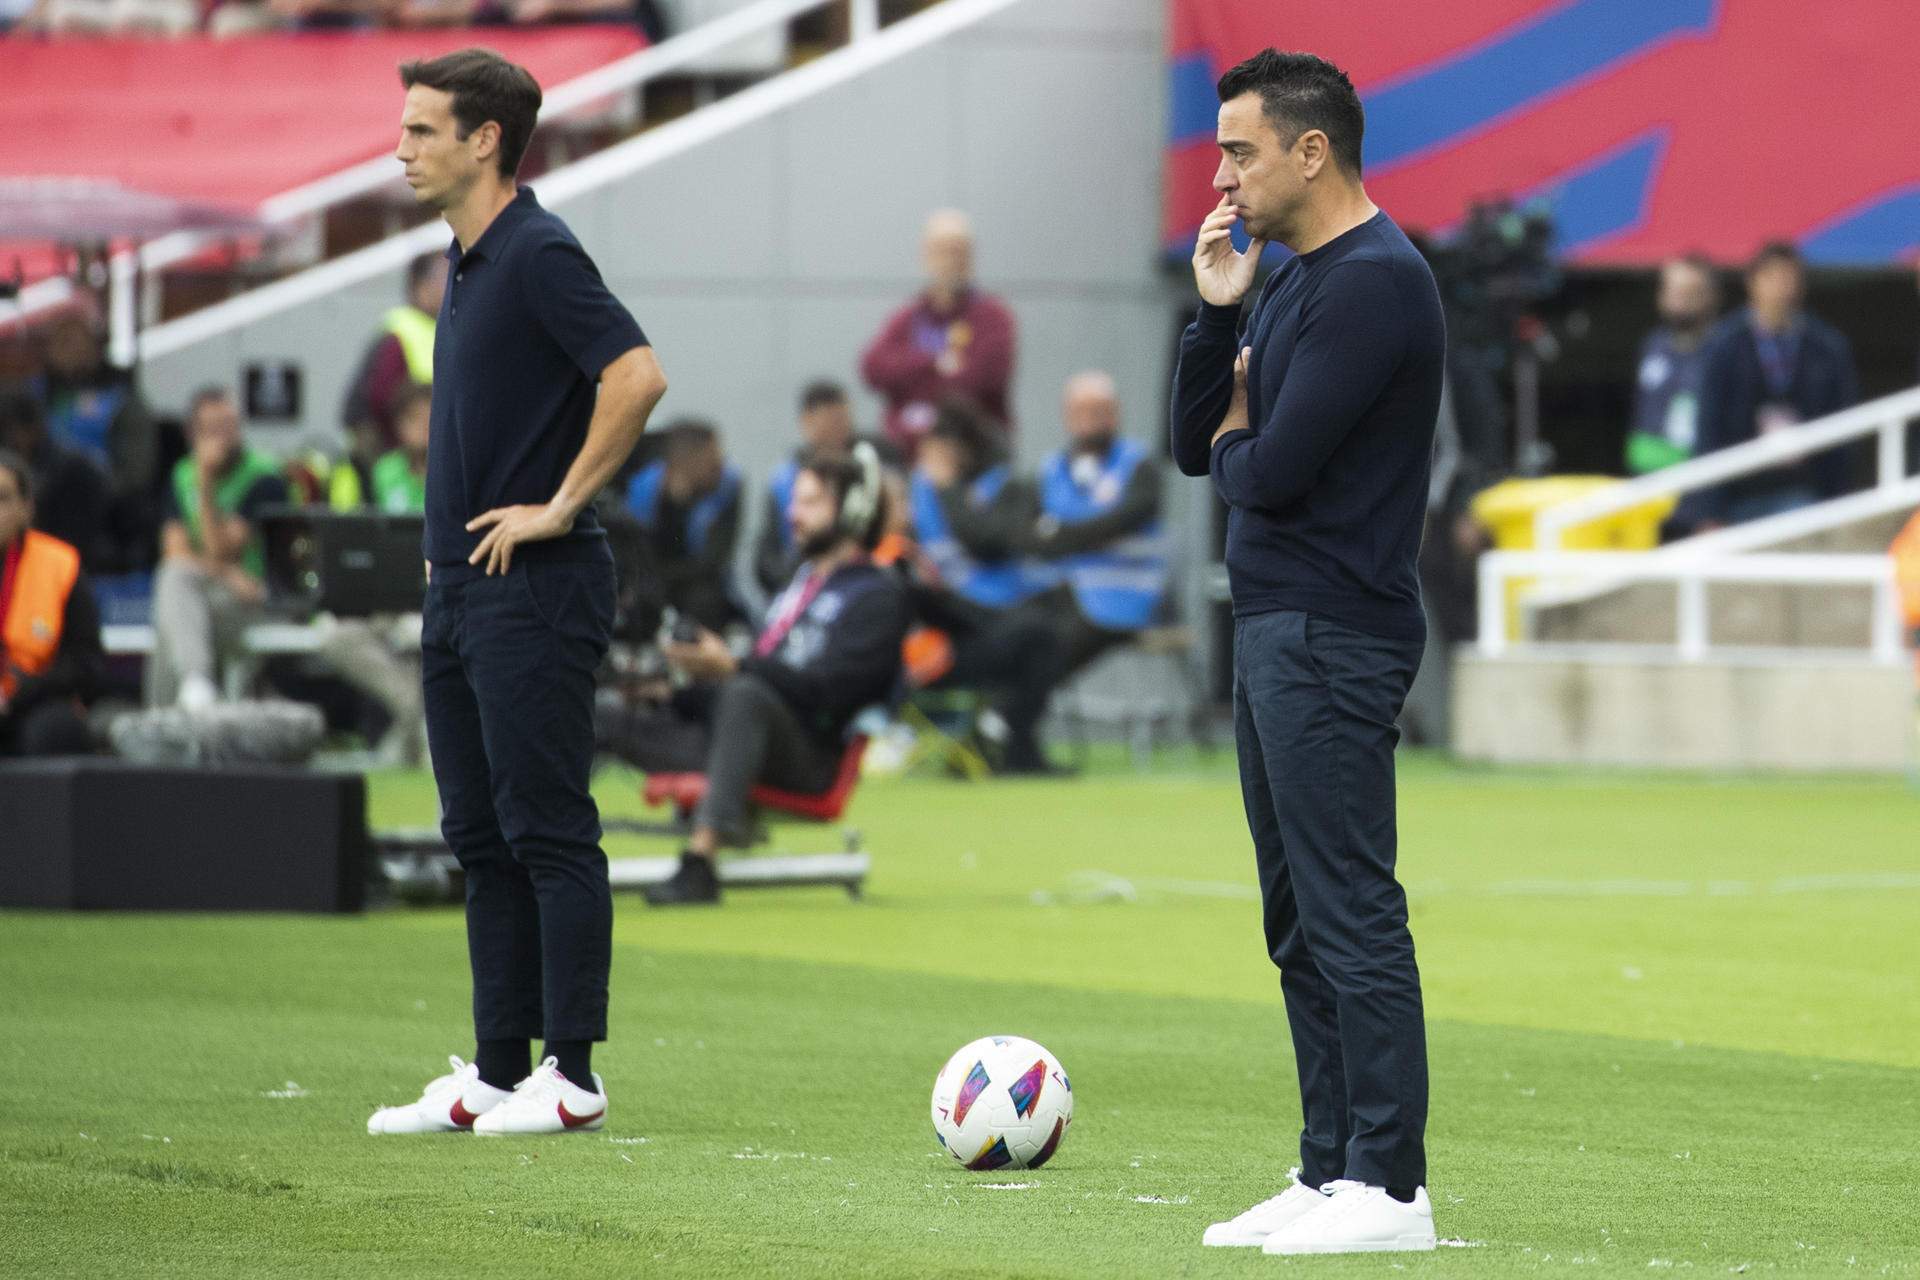 Sentenciat per Flick, no continua al Barça malgrat que era l'estrella amb Xavi Hernández